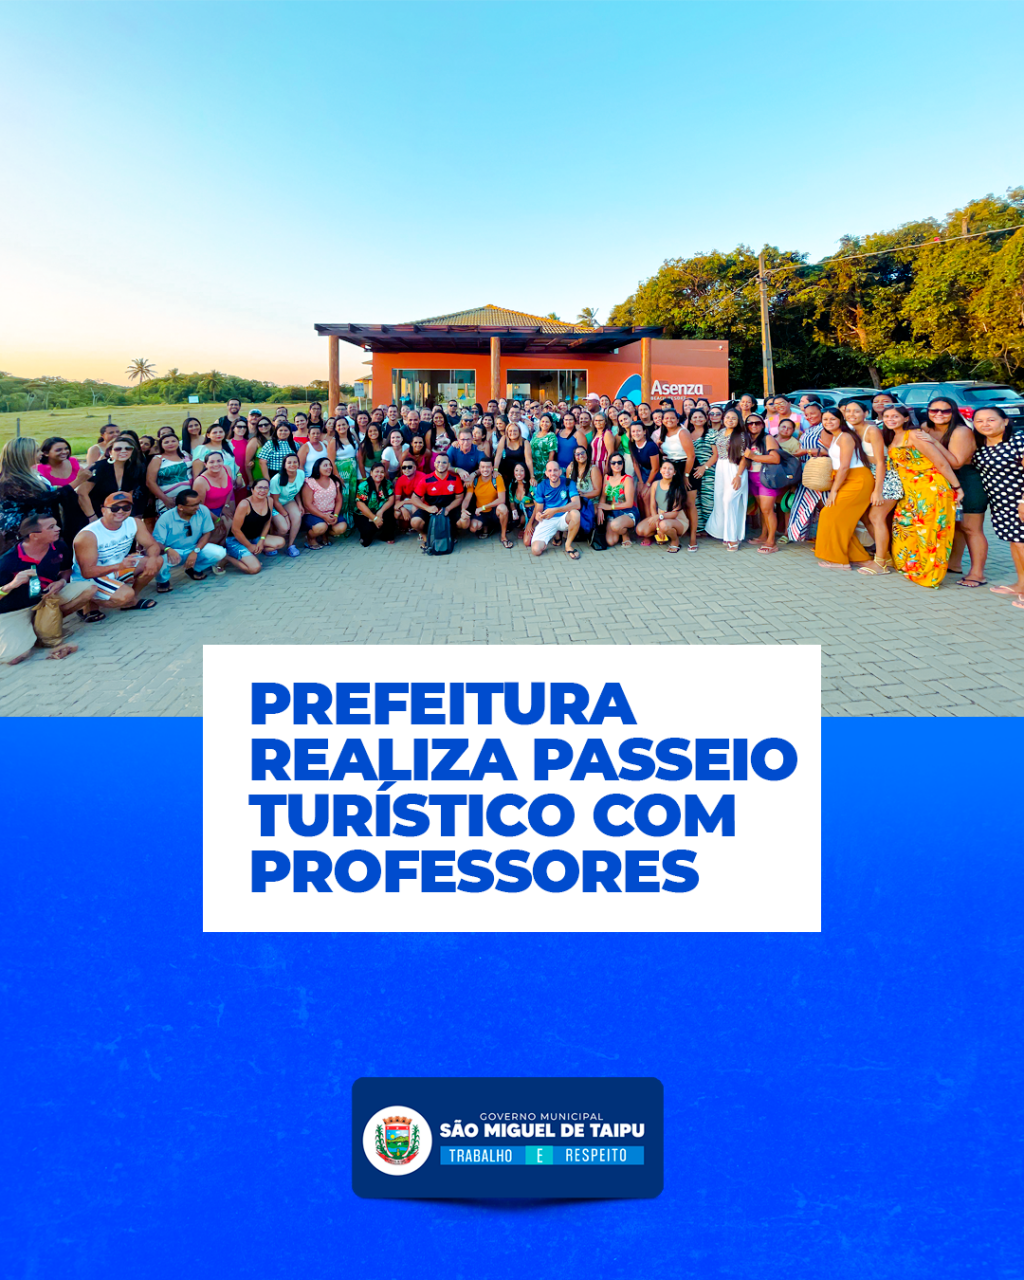 REFEITURA REALIZA PASSEIO TURÍSTICO COM PROFESSORES